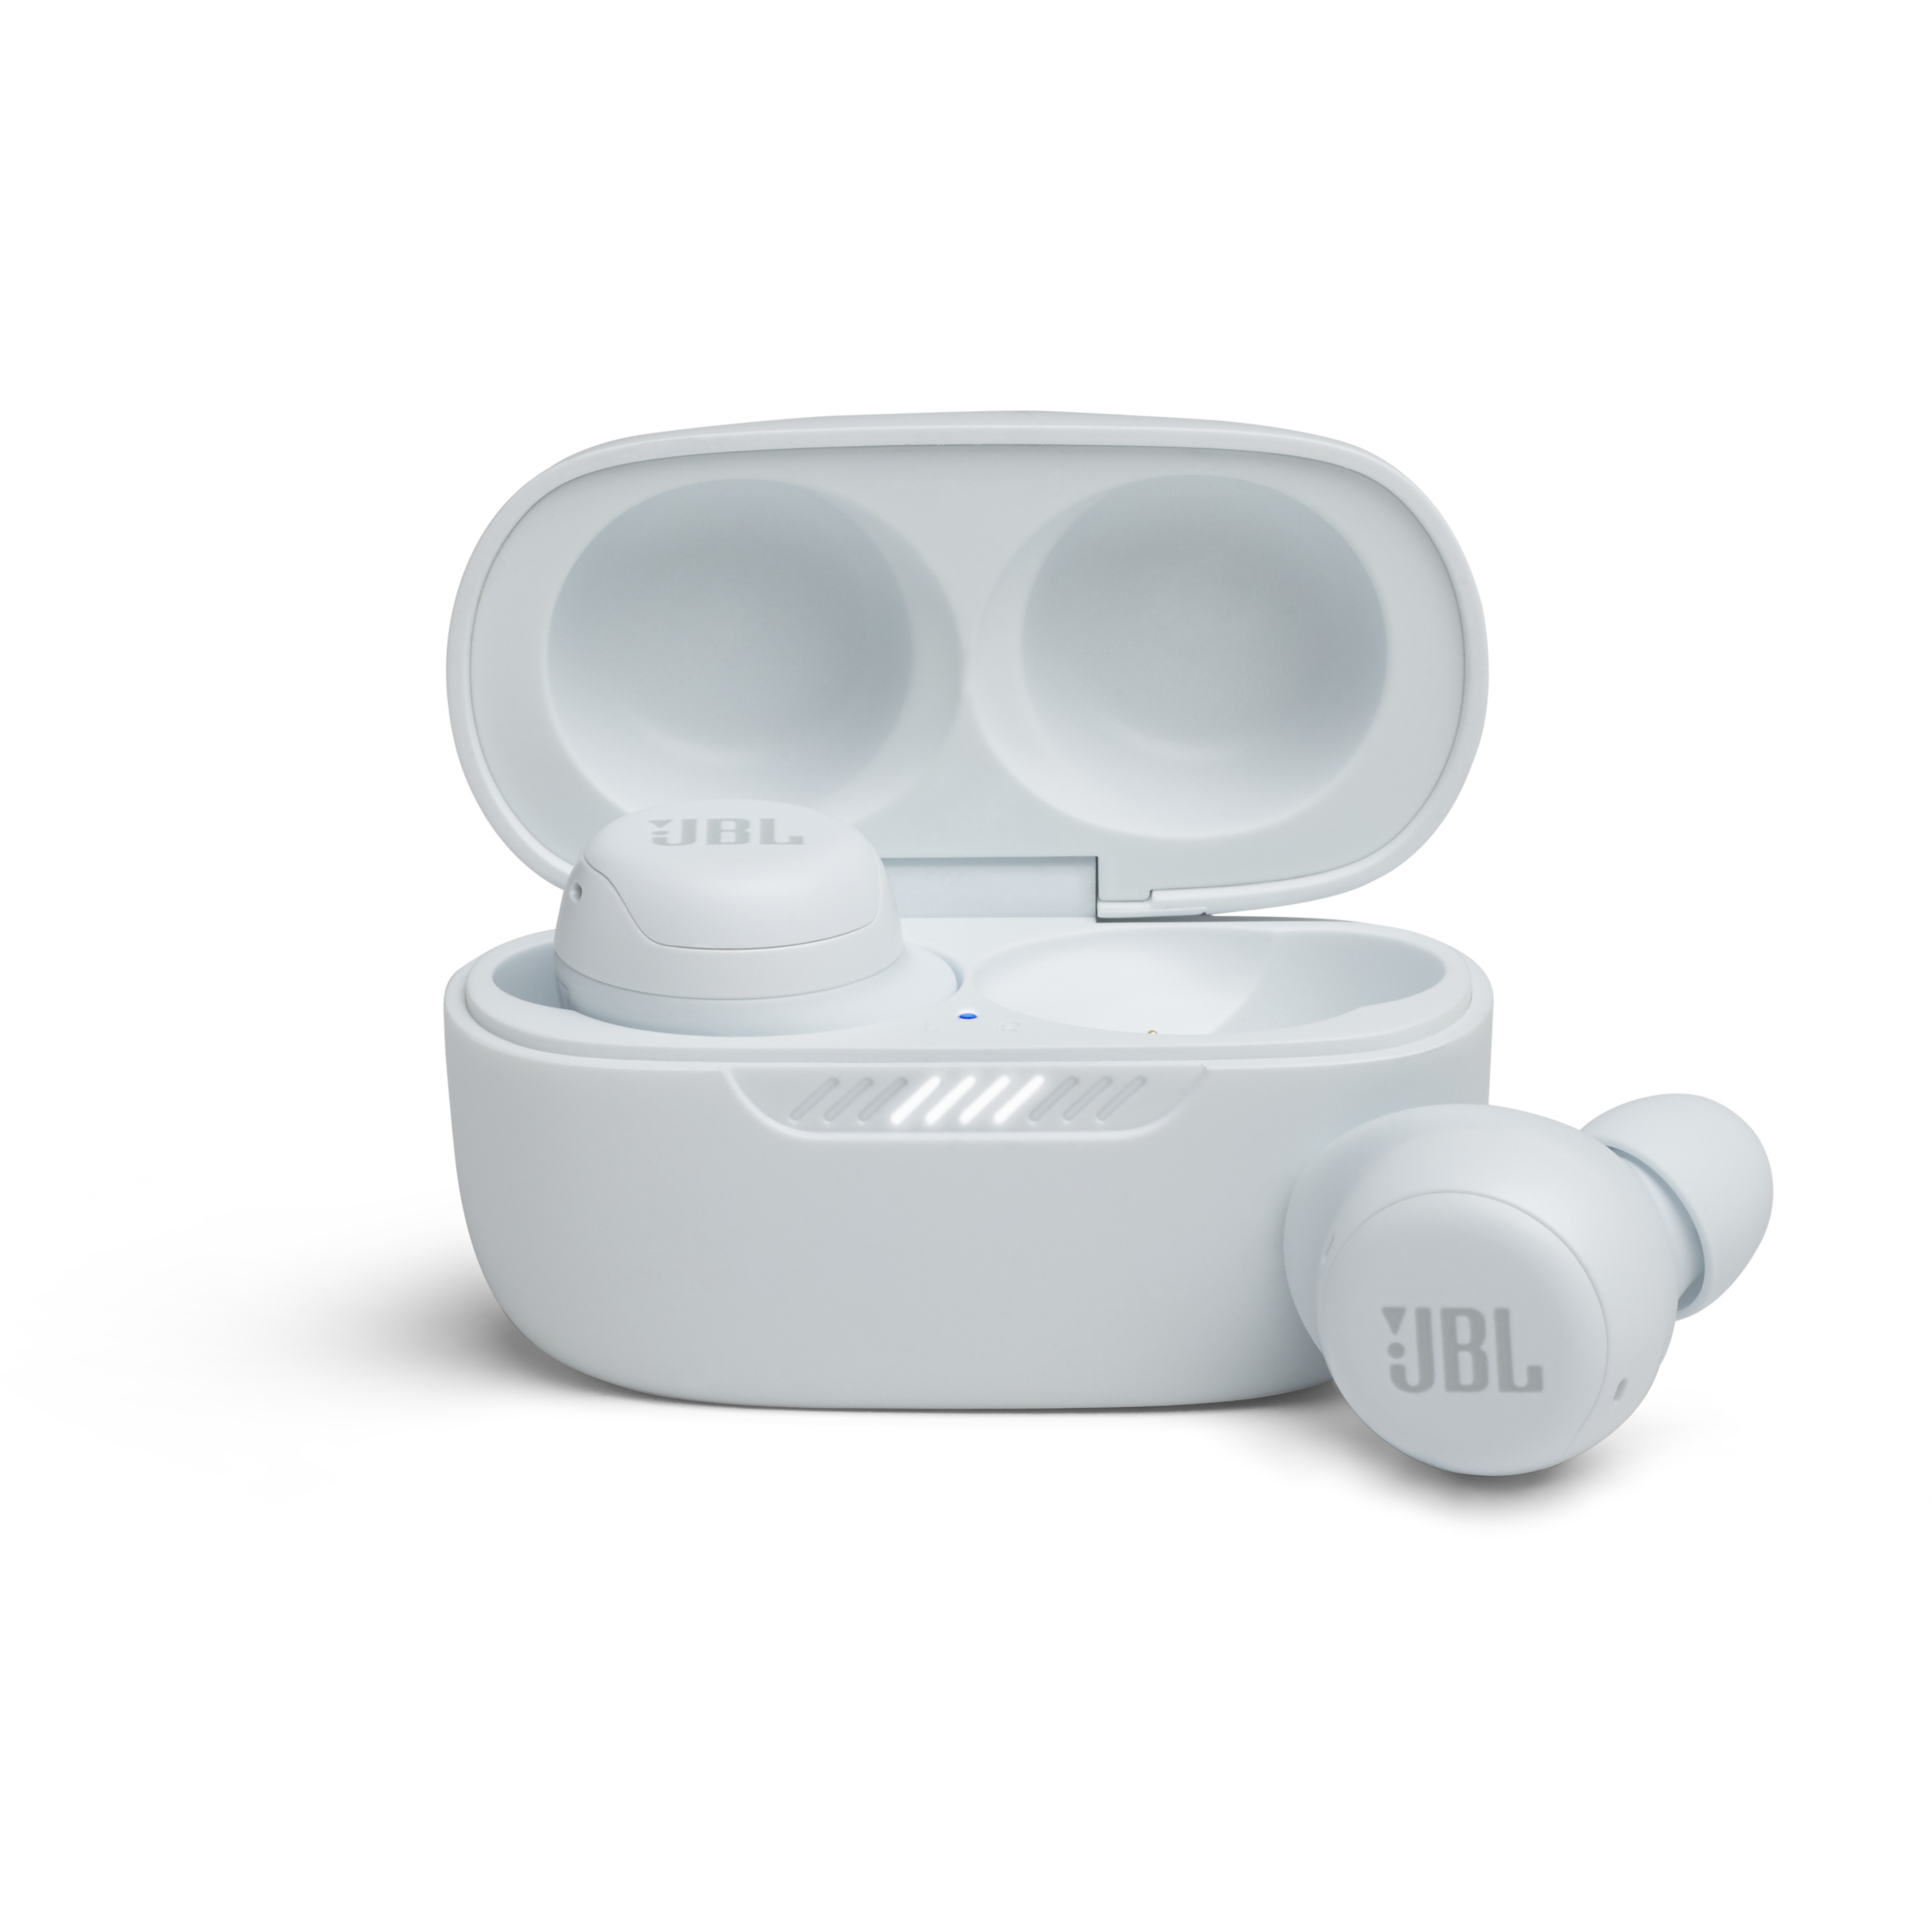 JBL LIVE Free NC+ draadloze in-ear hoofdtelefoon (wit) online kopen